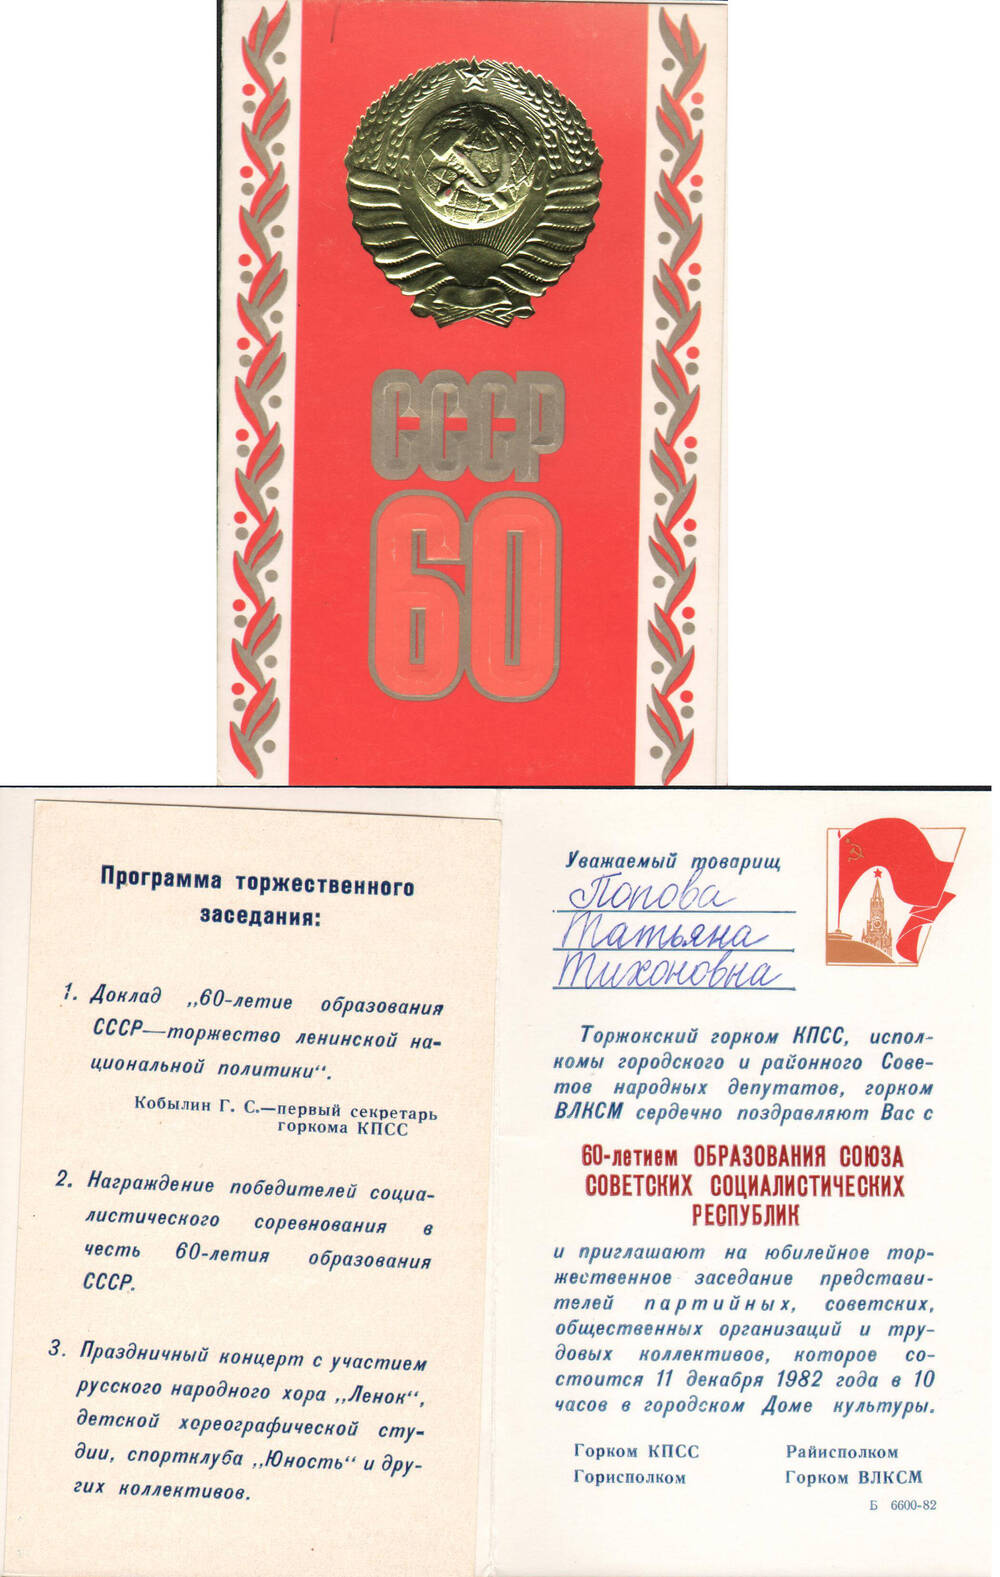 Приглашение на имя Поповой Т.Т. на торжественное заседание, посвященное 60-летию образования СССР